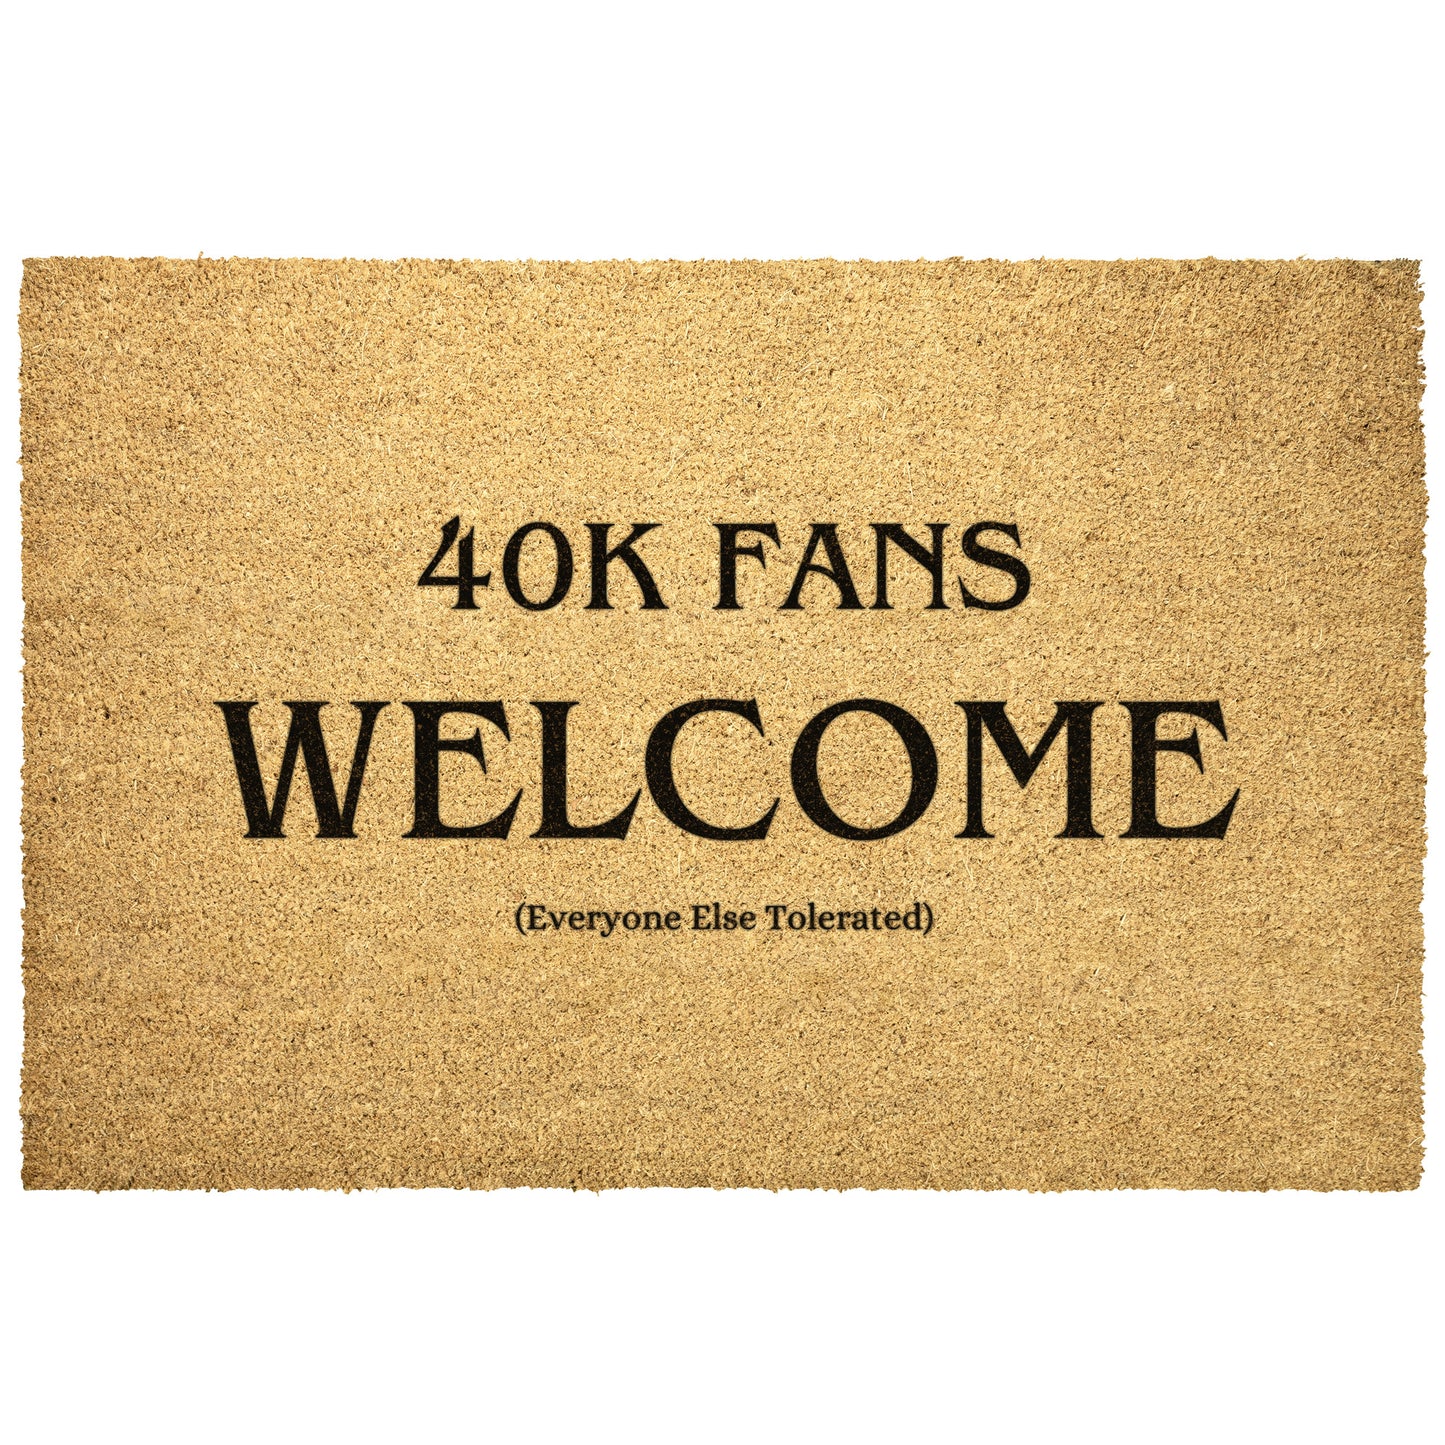 40K Fans Welcome - Door Mat